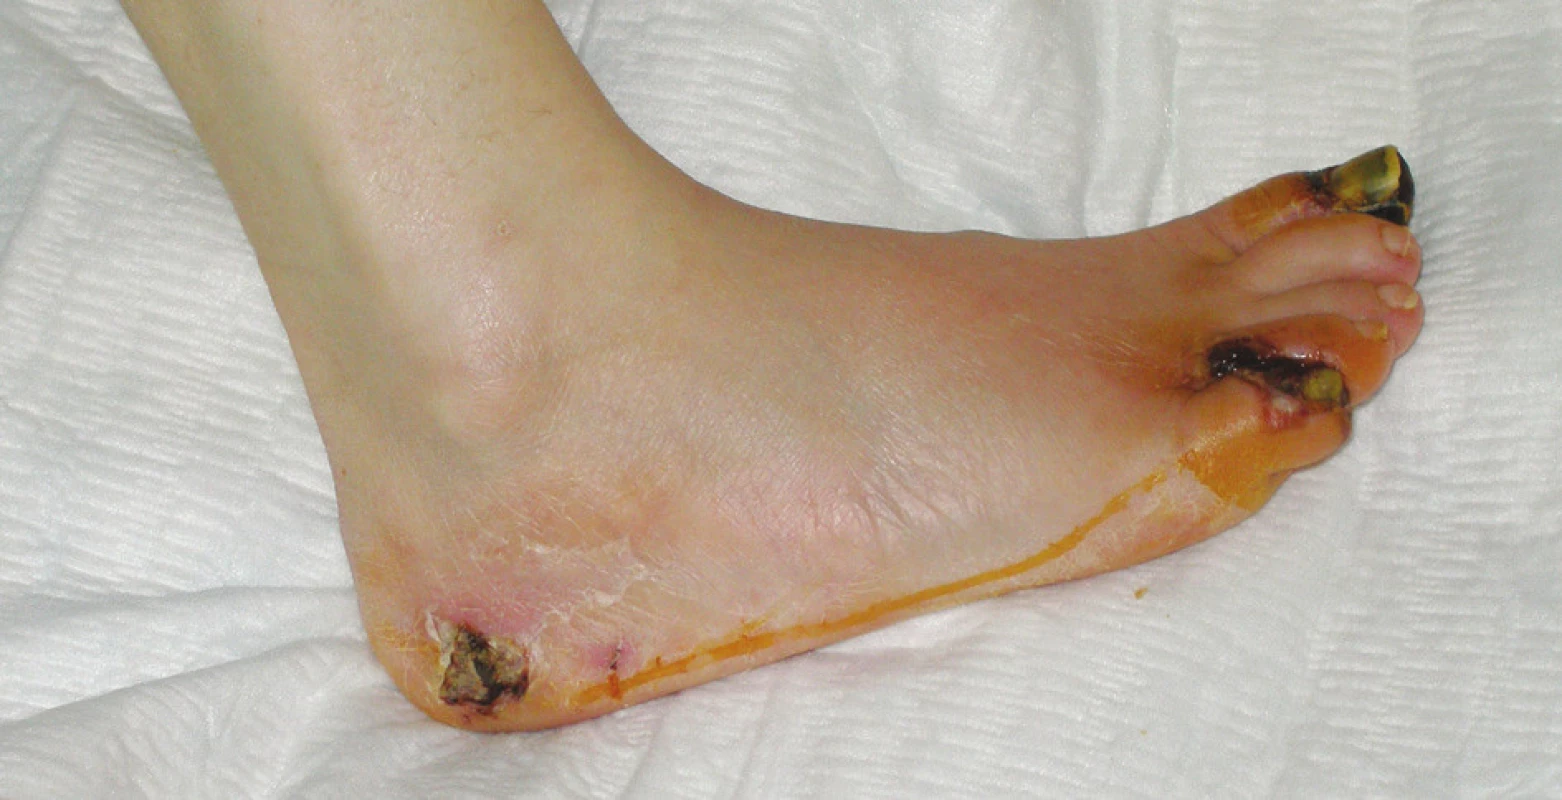 Neuroischemická diabetická noha – suchá gangréna distálneho článku palca, malíčka a medziprstového priestoru medzi 4. a 5. prstom pravej nohy, nekróza v laterálnej oblasti kalkanea (Meggit-Wagner 4. stupeň)
Fig. 1. Neuroischemic diabetic foot – dry gangrene of the distal phalanx of the big toe, the little toe and the 4&lt;sup&gt;th&lt;/sup&gt; interphalangeal space, necrosis in the lateral calcaneal region (Meggit-Wagner grade 4)